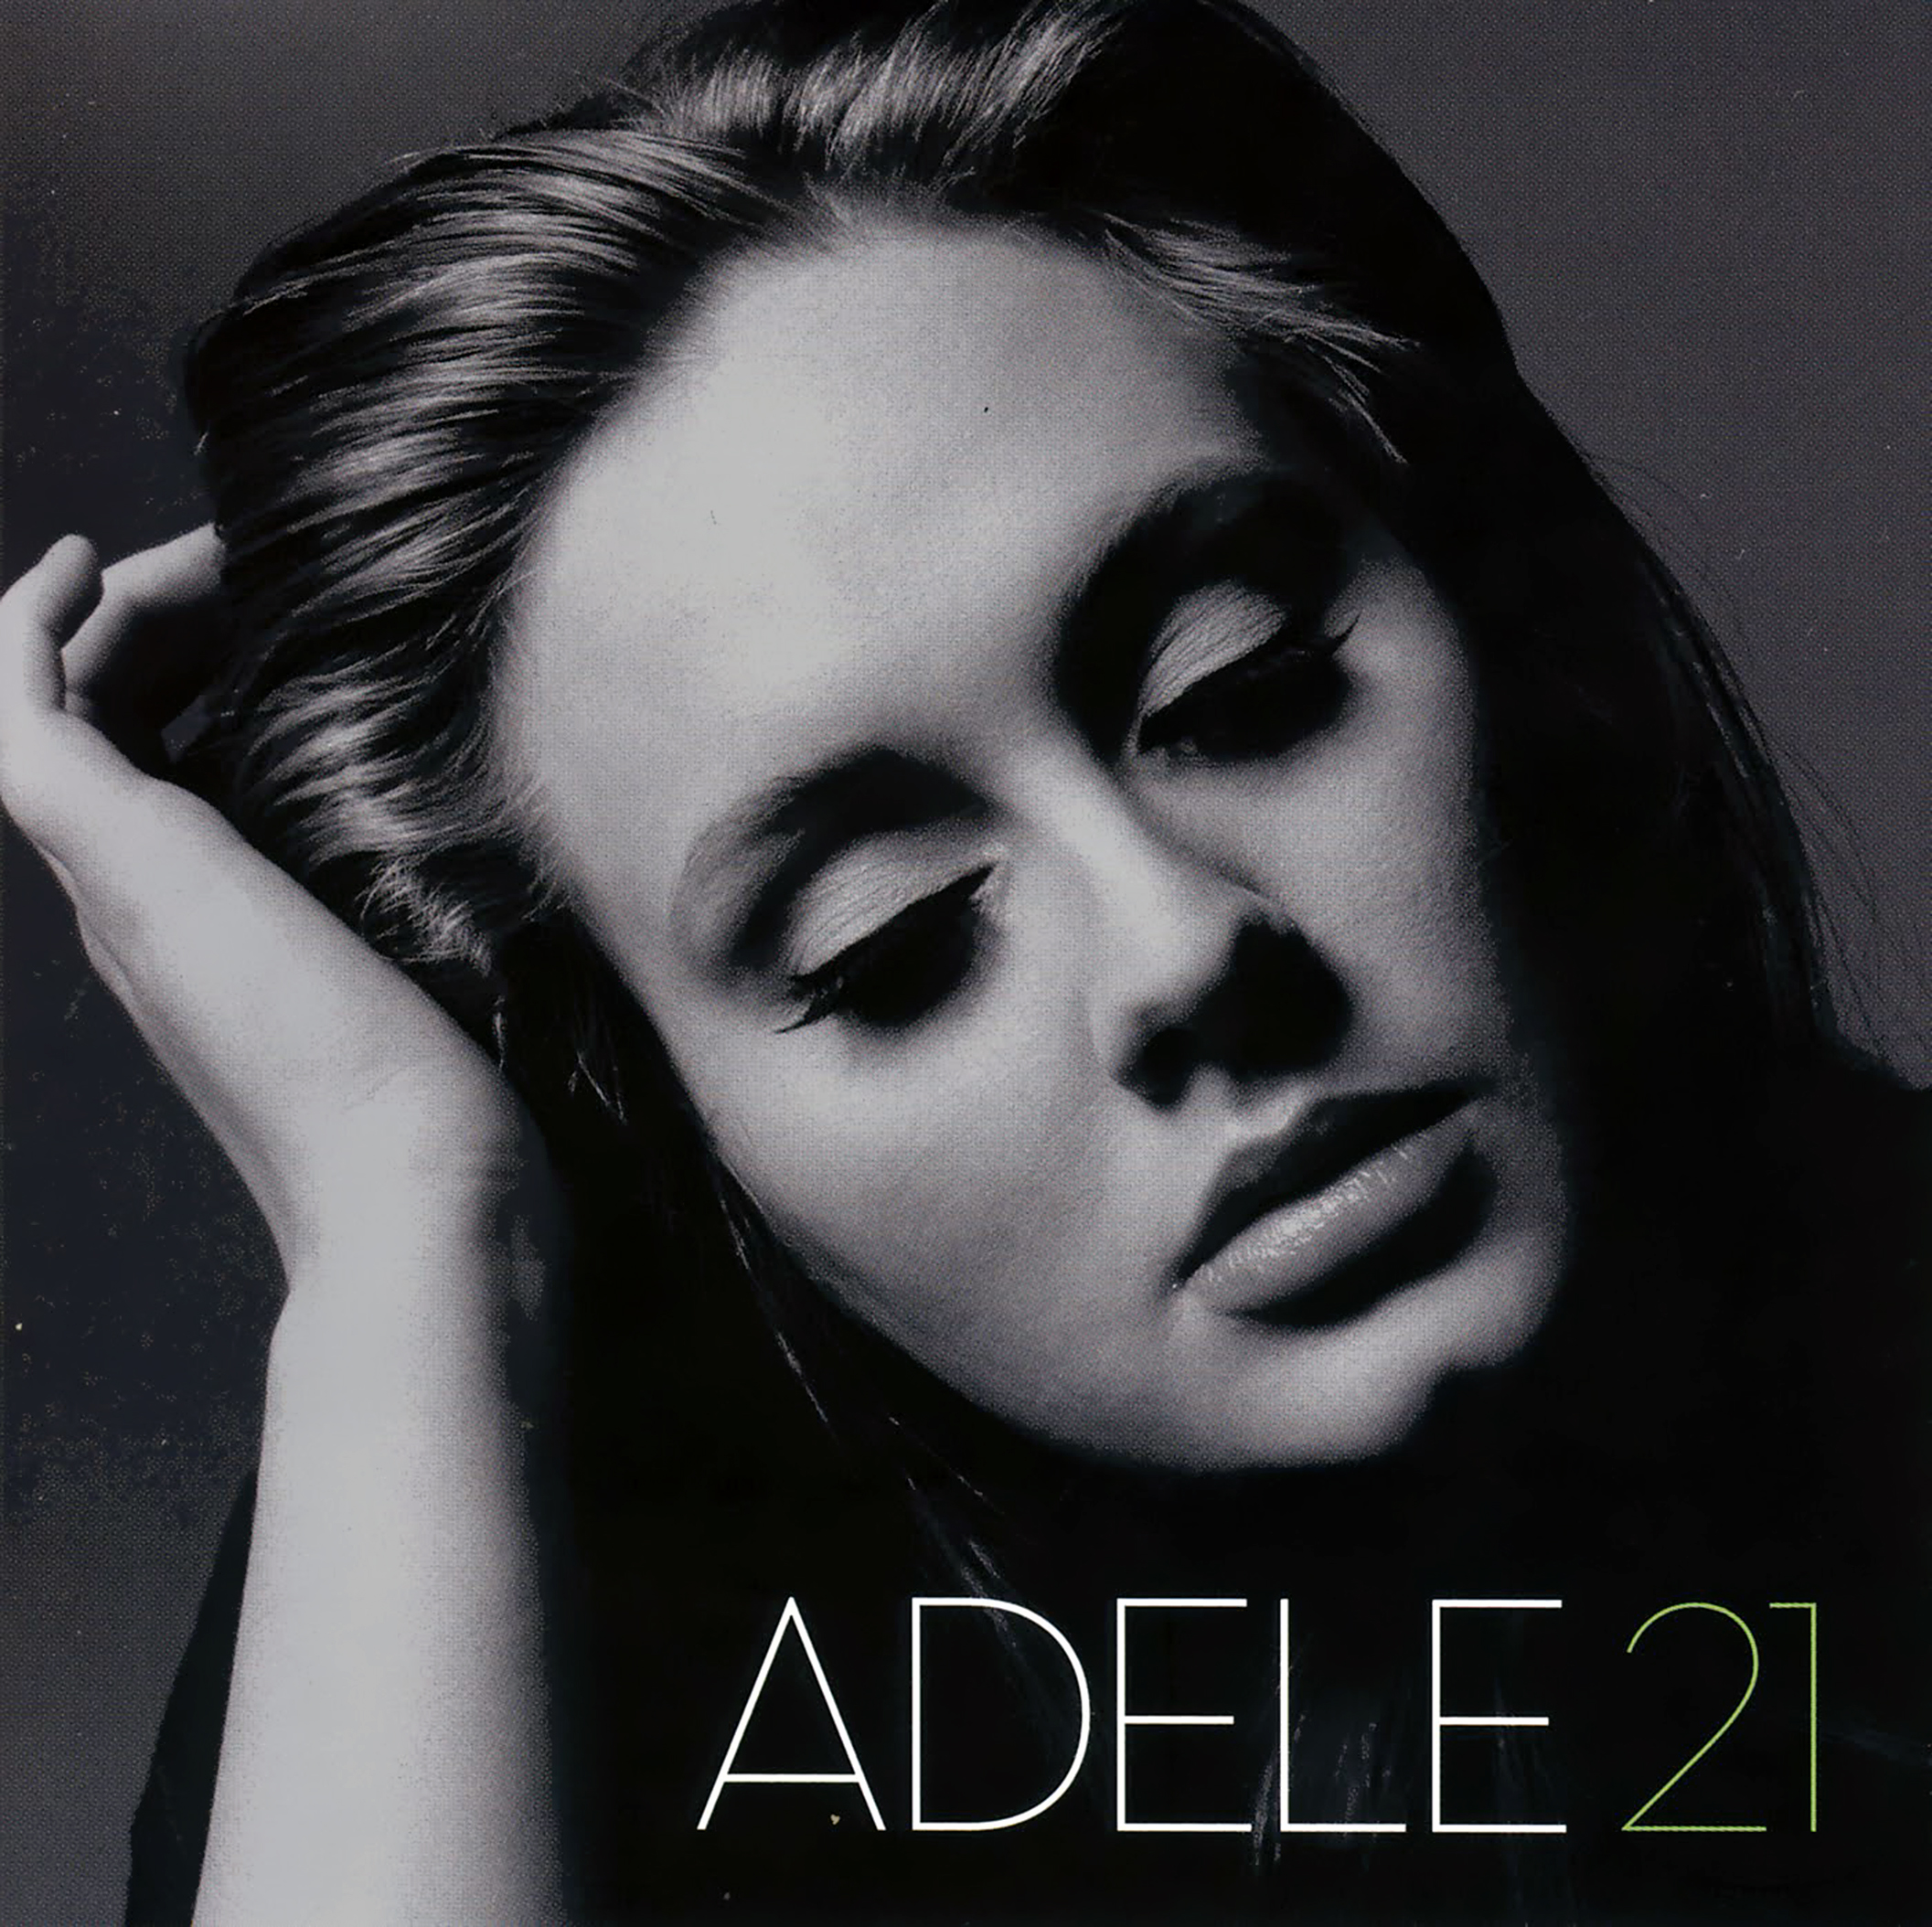 (CD) 21 - Adele -